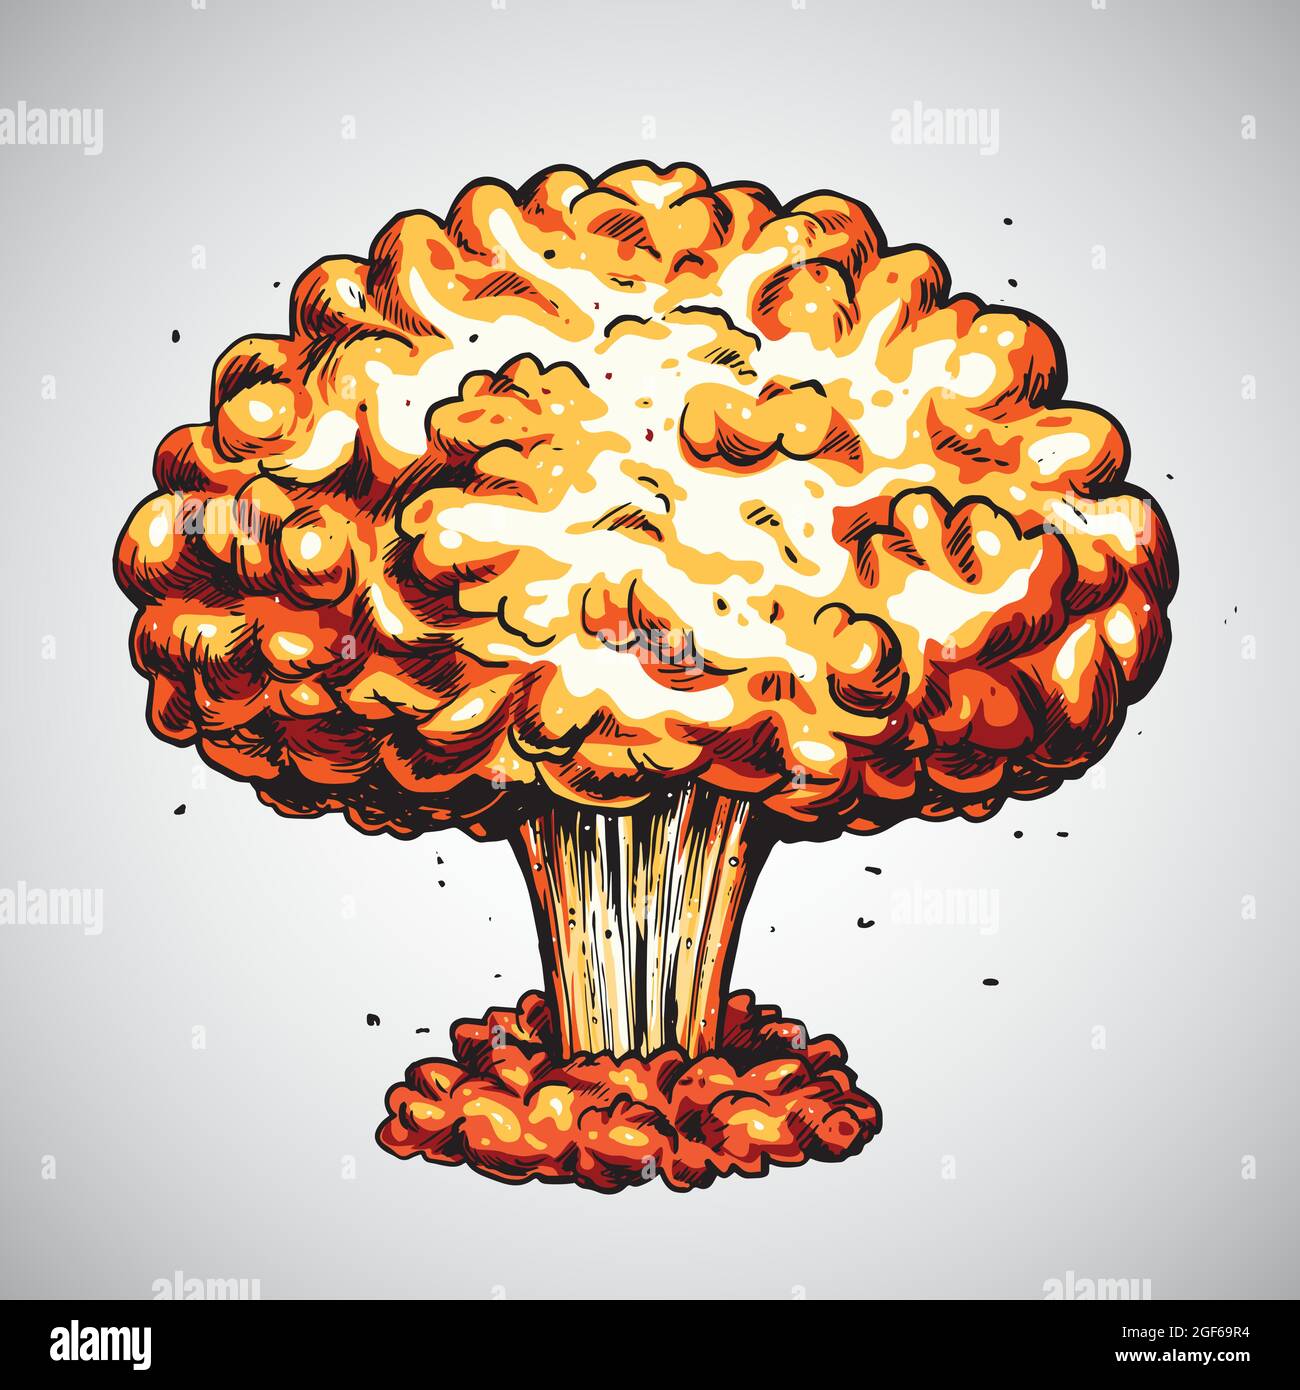 Esplosione nucleare. Illustrazione della nuvola di funghi della bomba atomica Illustrazione Vettoriale